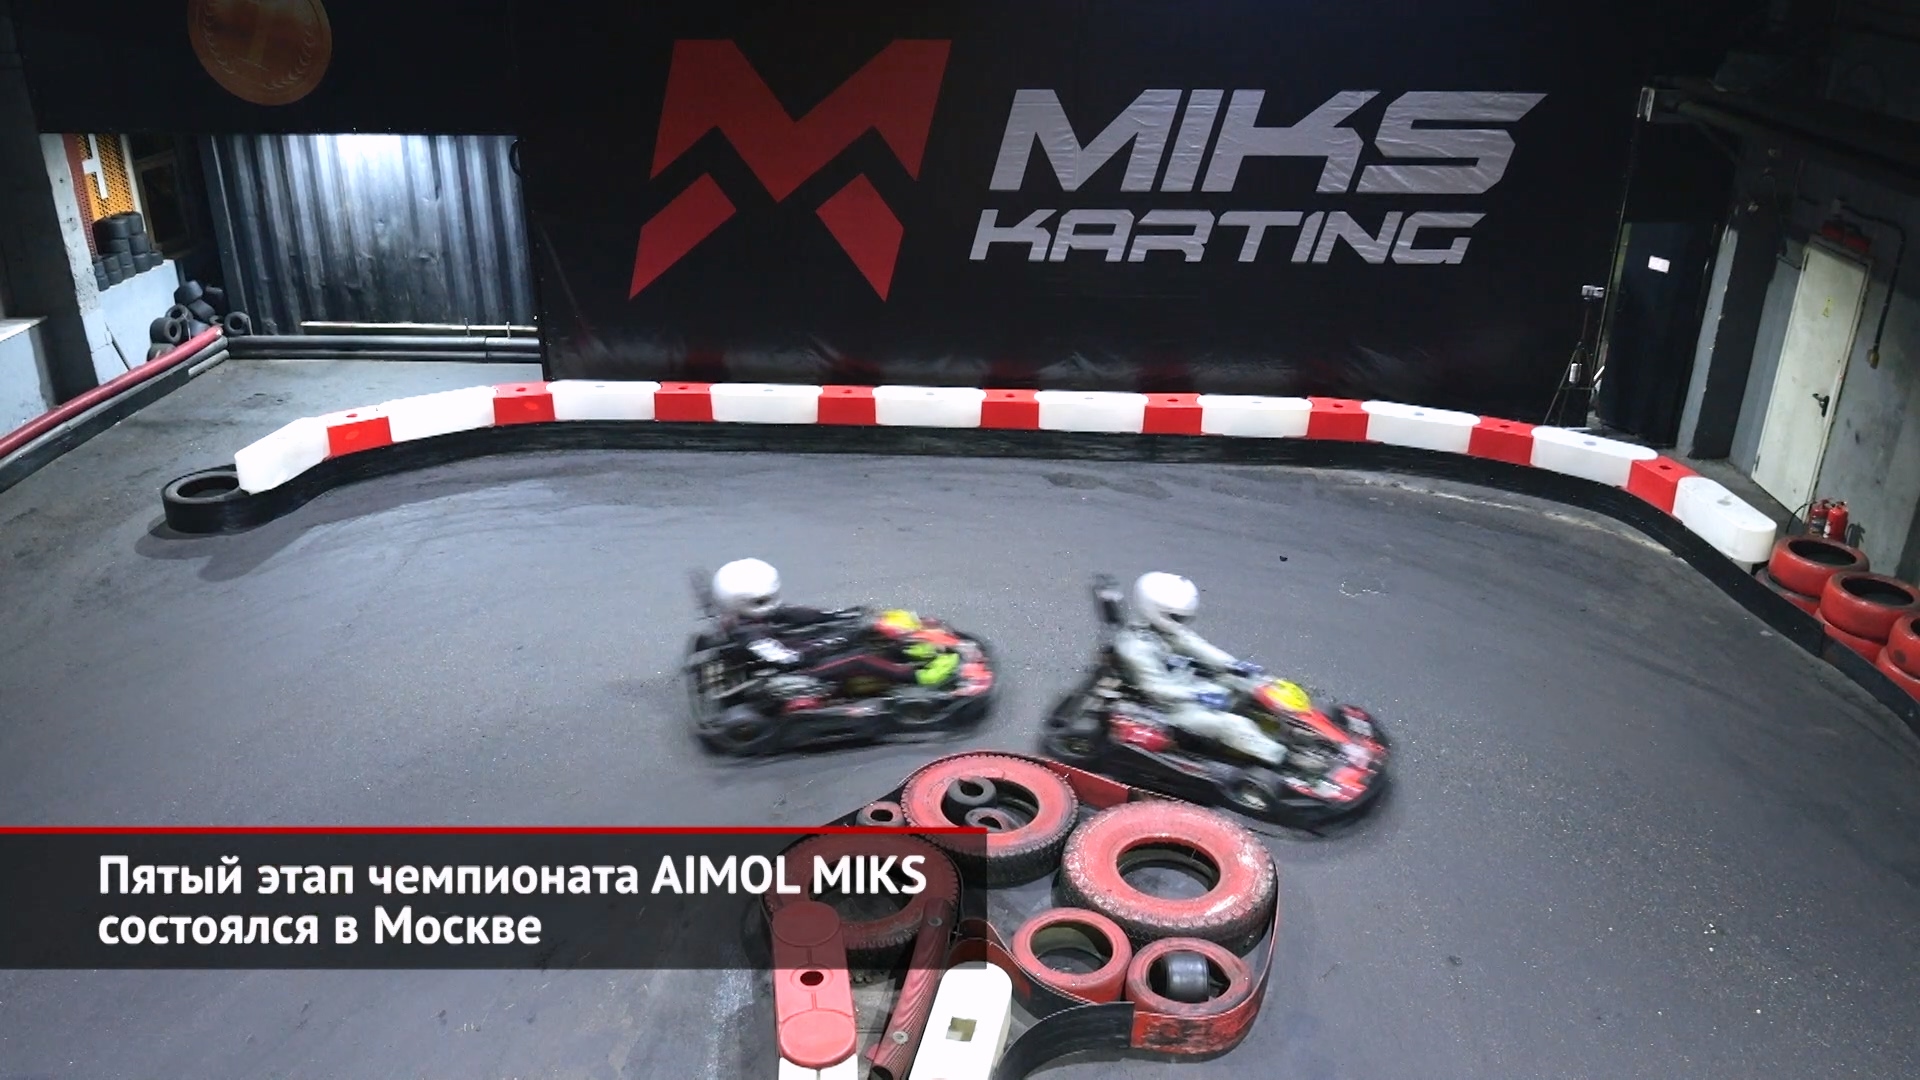 Пятый этап чемпионата AIMOL MIKS состоялся в Москве | Новости с колёс №2412